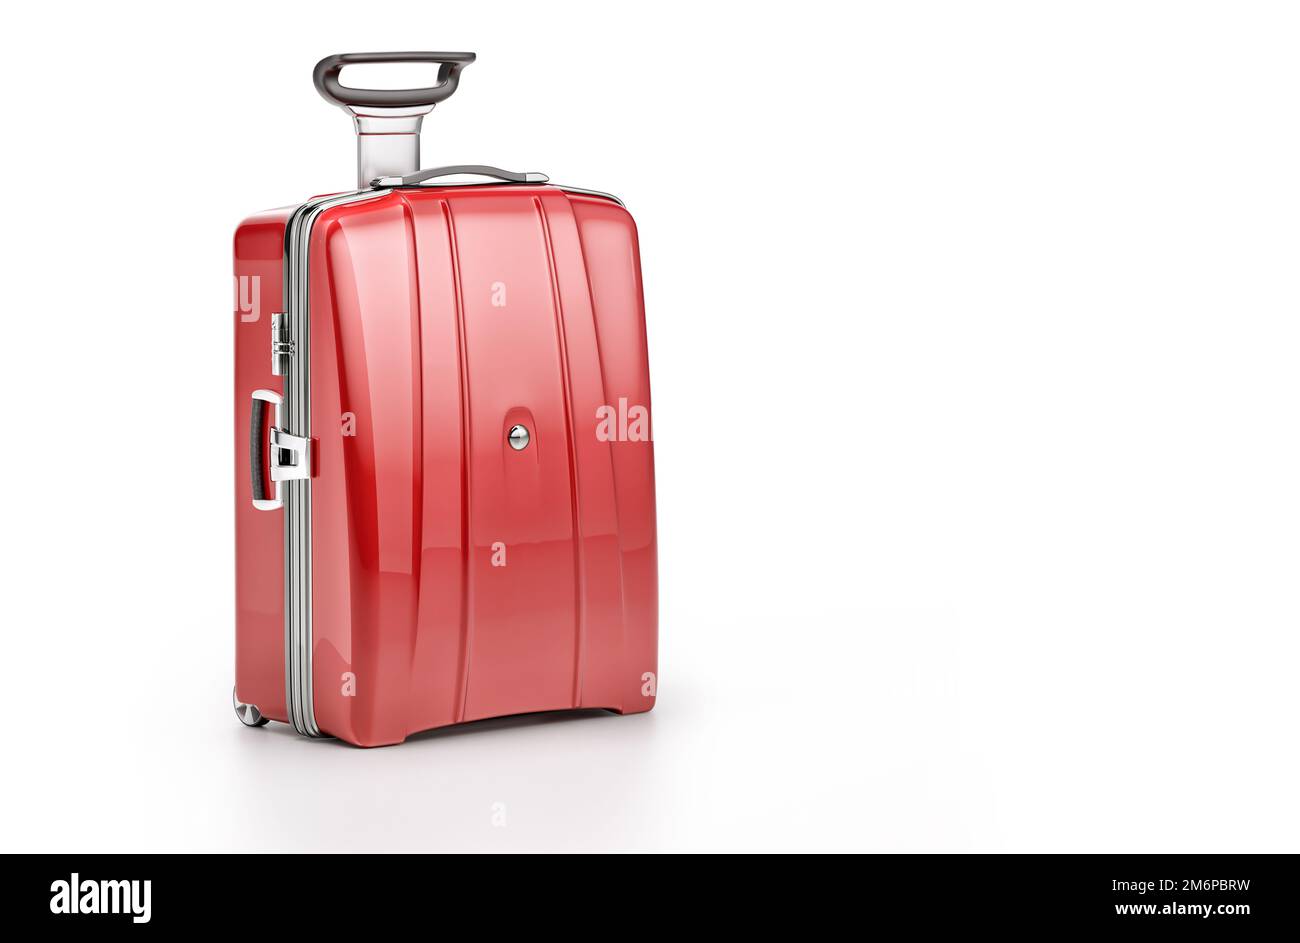 Valise de voyage élégante rouge isolée sur fond blanc. Valise à bagages à roulettes, bagages de vacances d'été avec espace pour le texte, 3D Voyage de style minimal Banque D'Images